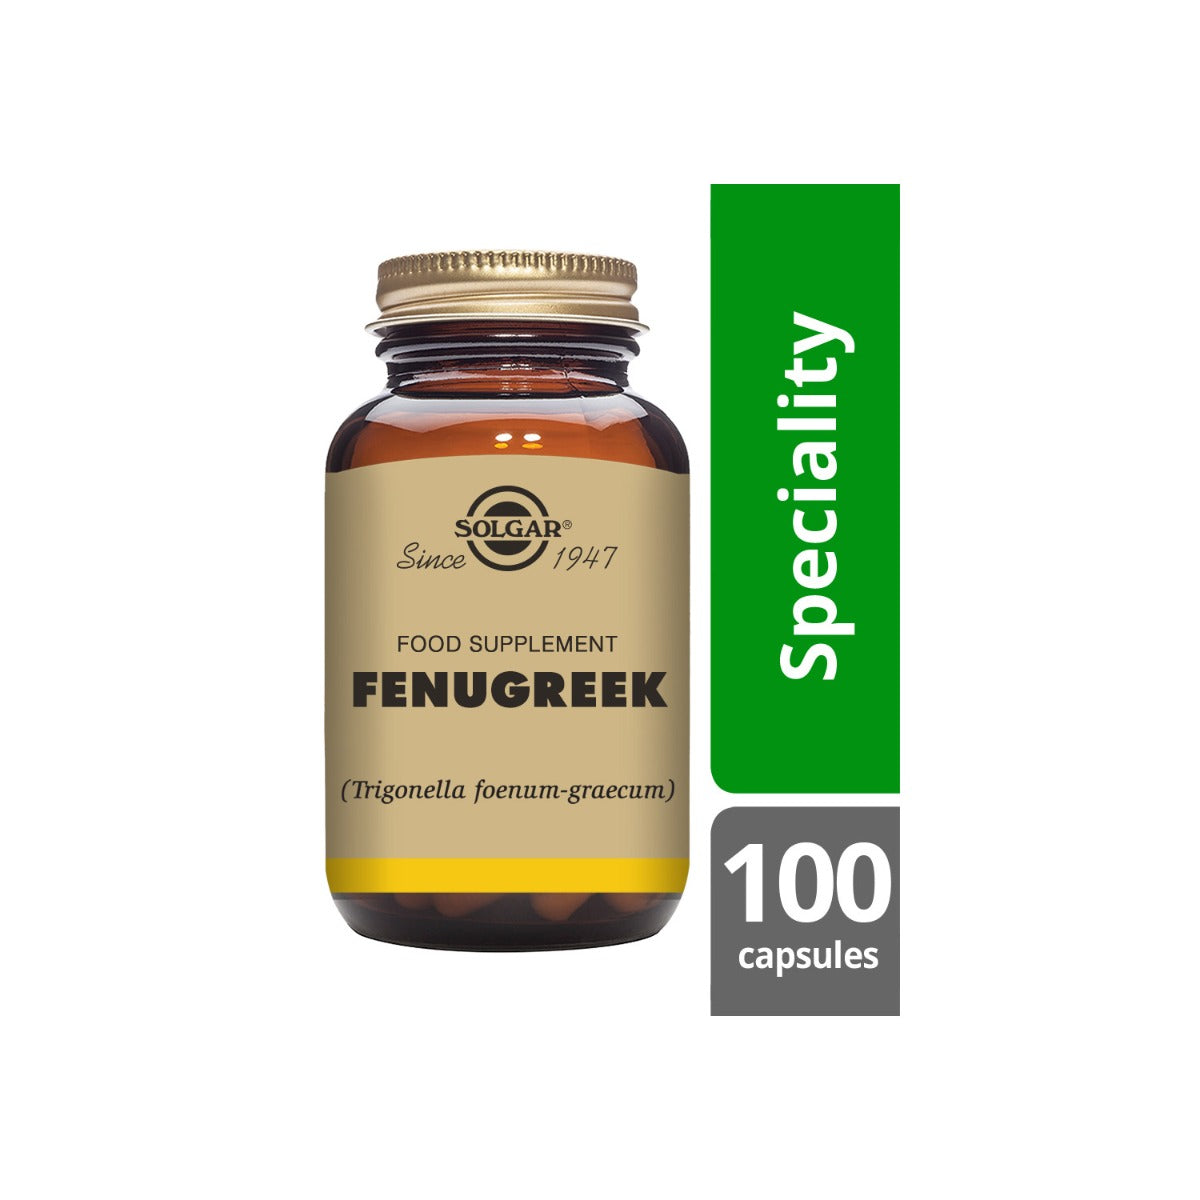 Solgar® Fenugreek Vegetable Capsules - Pack of 100